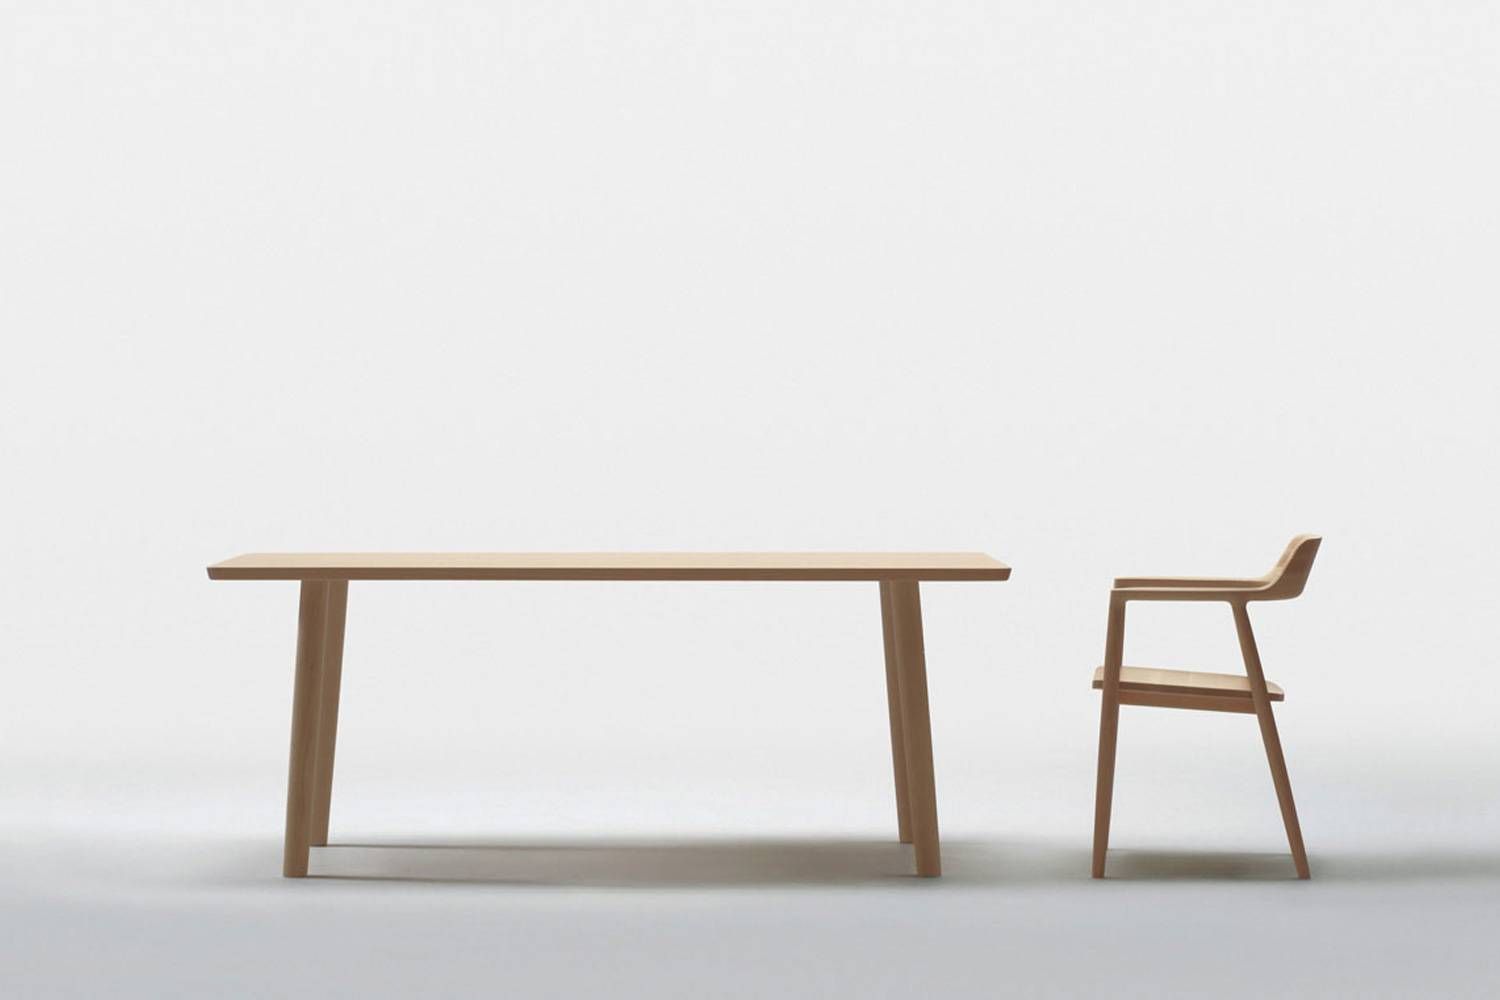 マルニ木工 ヒロシマ ダイニングテーブル 伸長式 同シリーズの仕様違いのイメージ画像です。